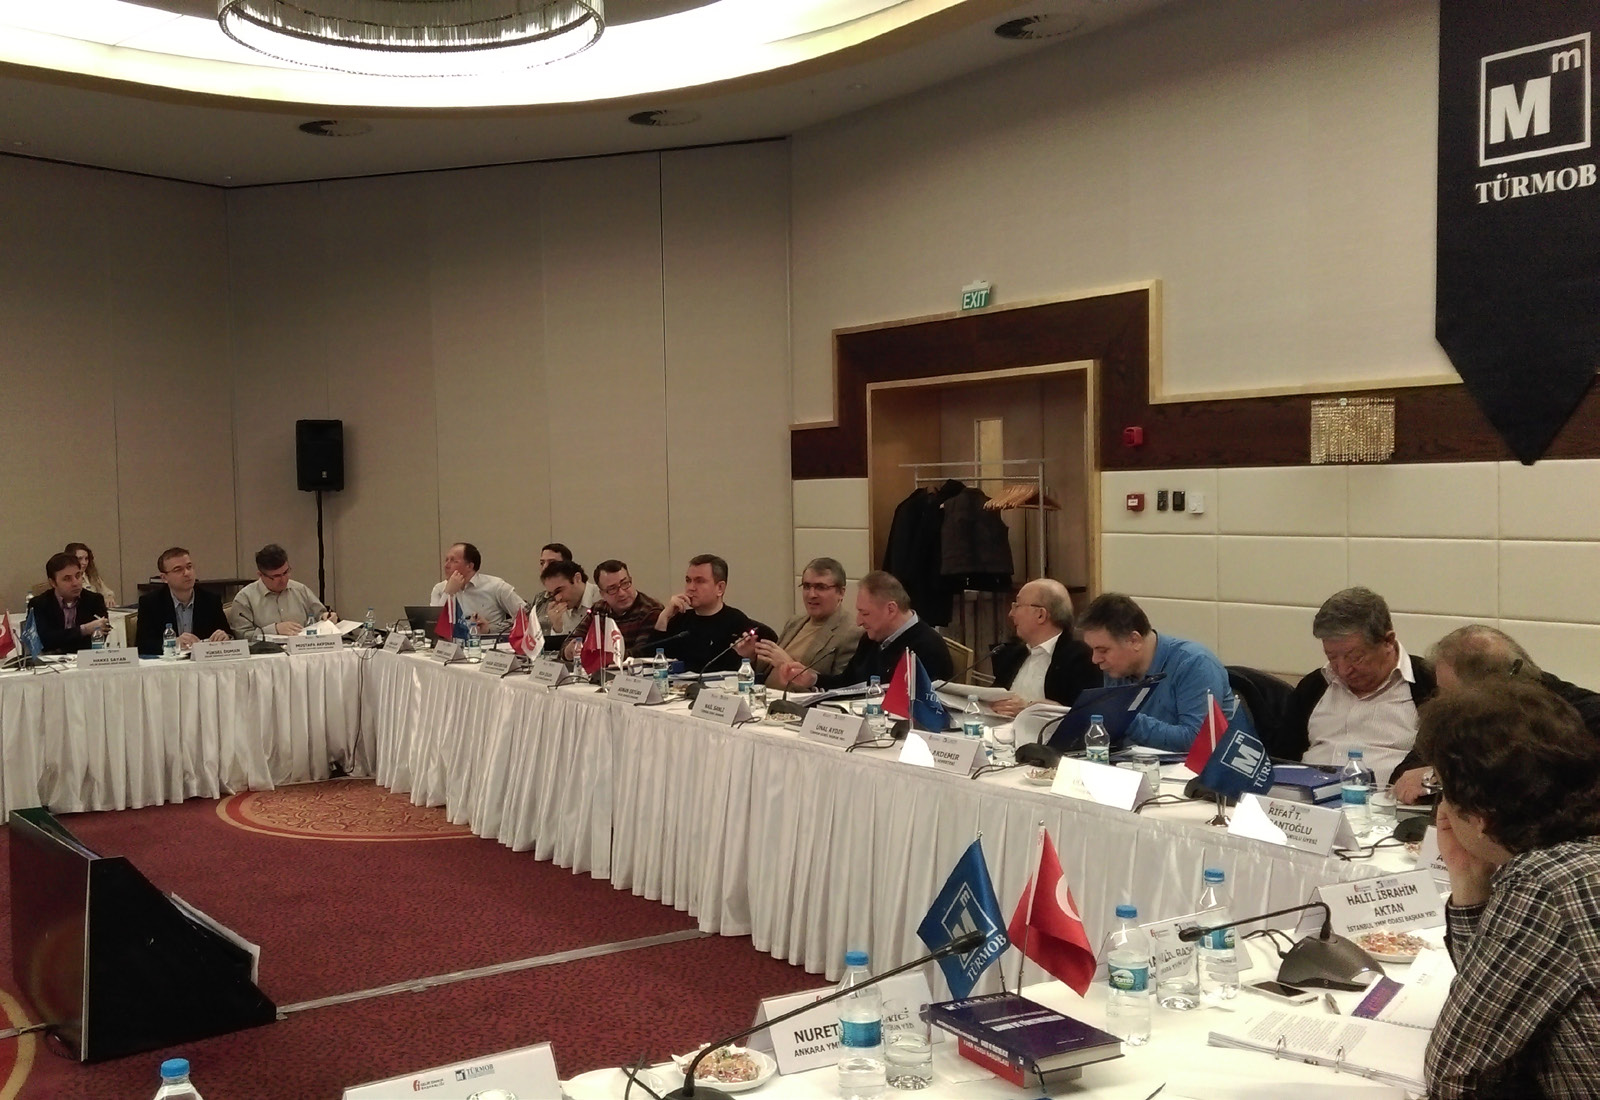 Başkanlığı temsilcileri, TÜRMOB Yönetim Kurulu, YMM Odalarının temsilcileri ile SMMM Odalarının temsilcileri 20-21 Mart tarihlerinde Bolu da bir araya geldi.